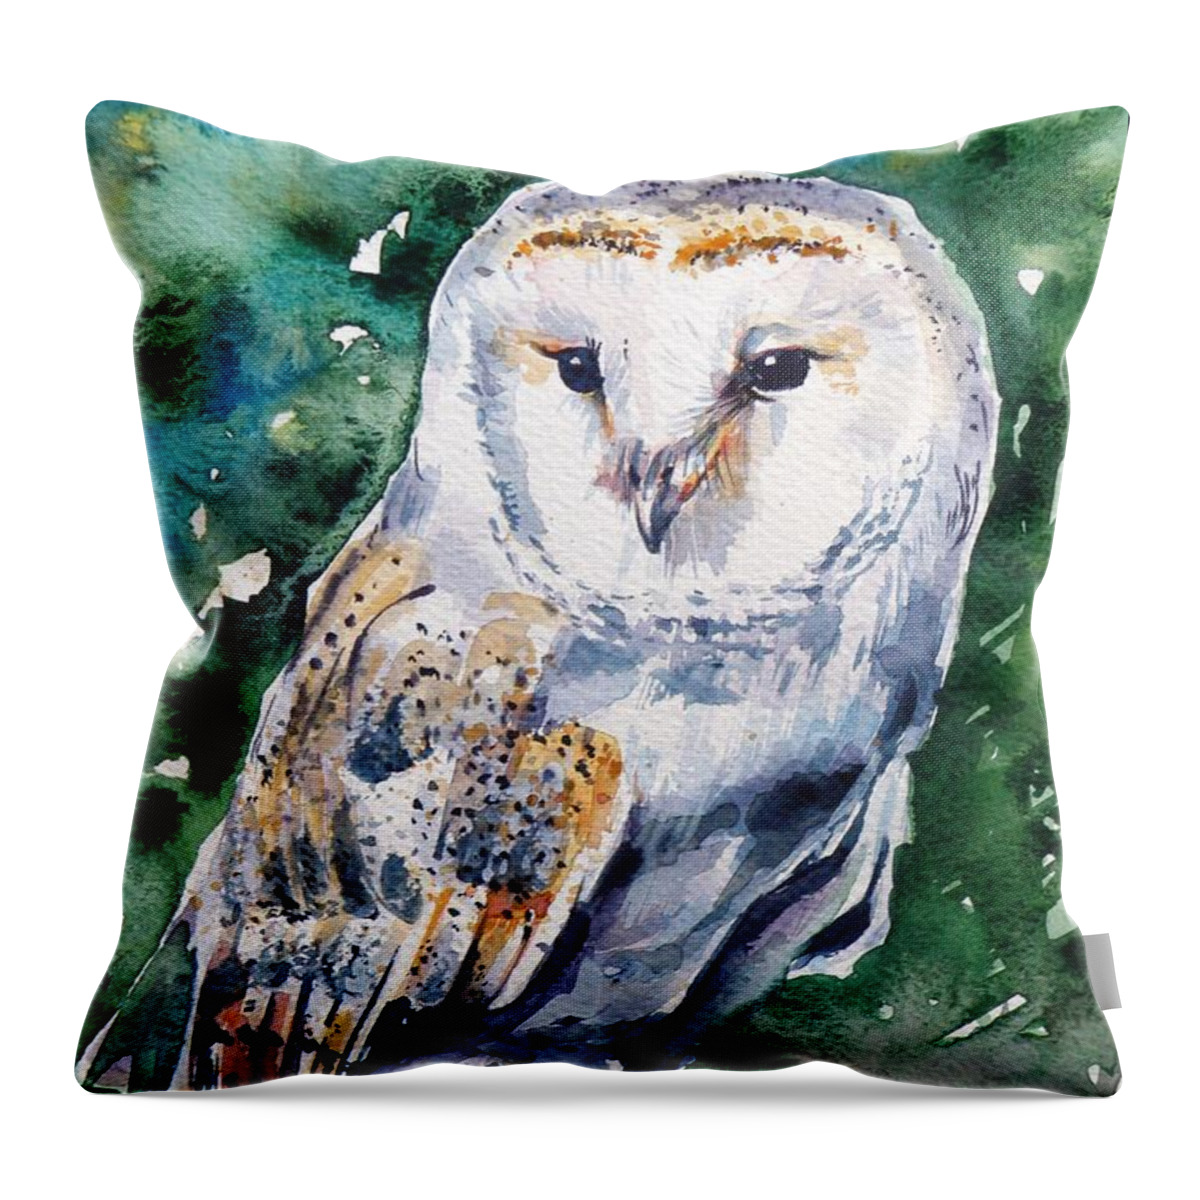 Barn Owl Throw Pillow featuring the painting Barn owl #3 by Kovacs Anna Brigitta